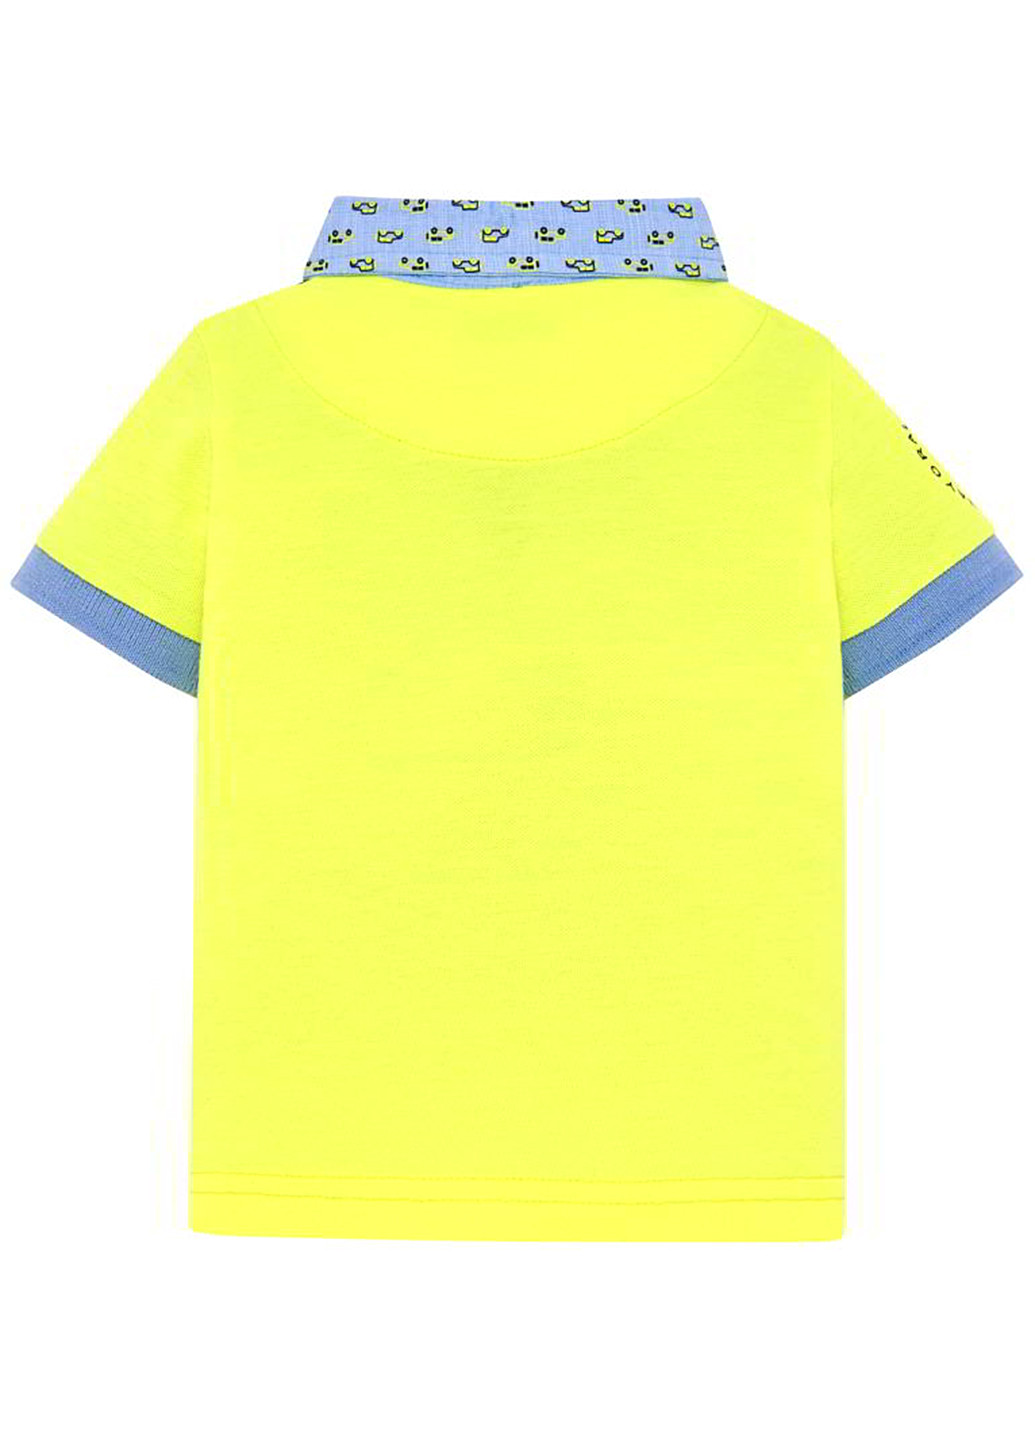 Желтая детская футболка-поло для мальчика Mayoral однотонная